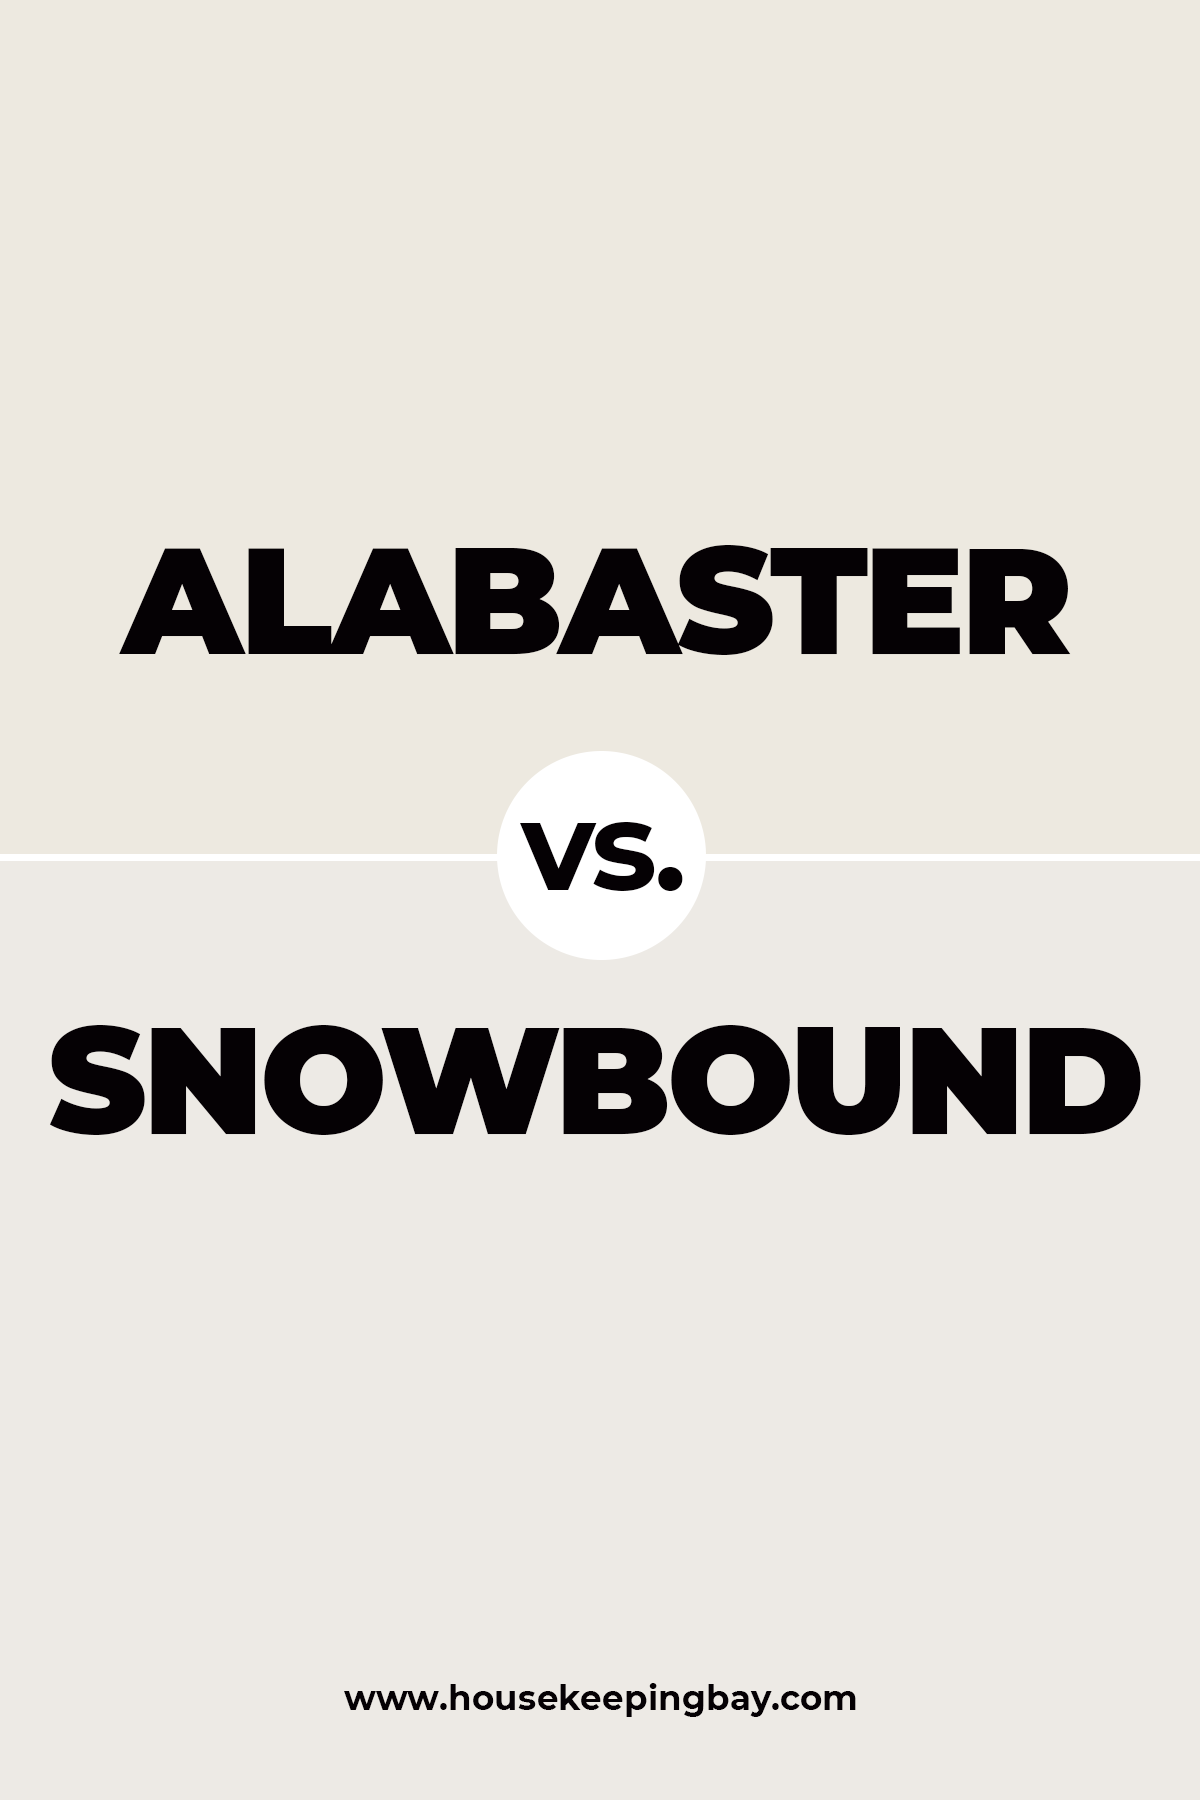 Alabaster vs. Snowbound